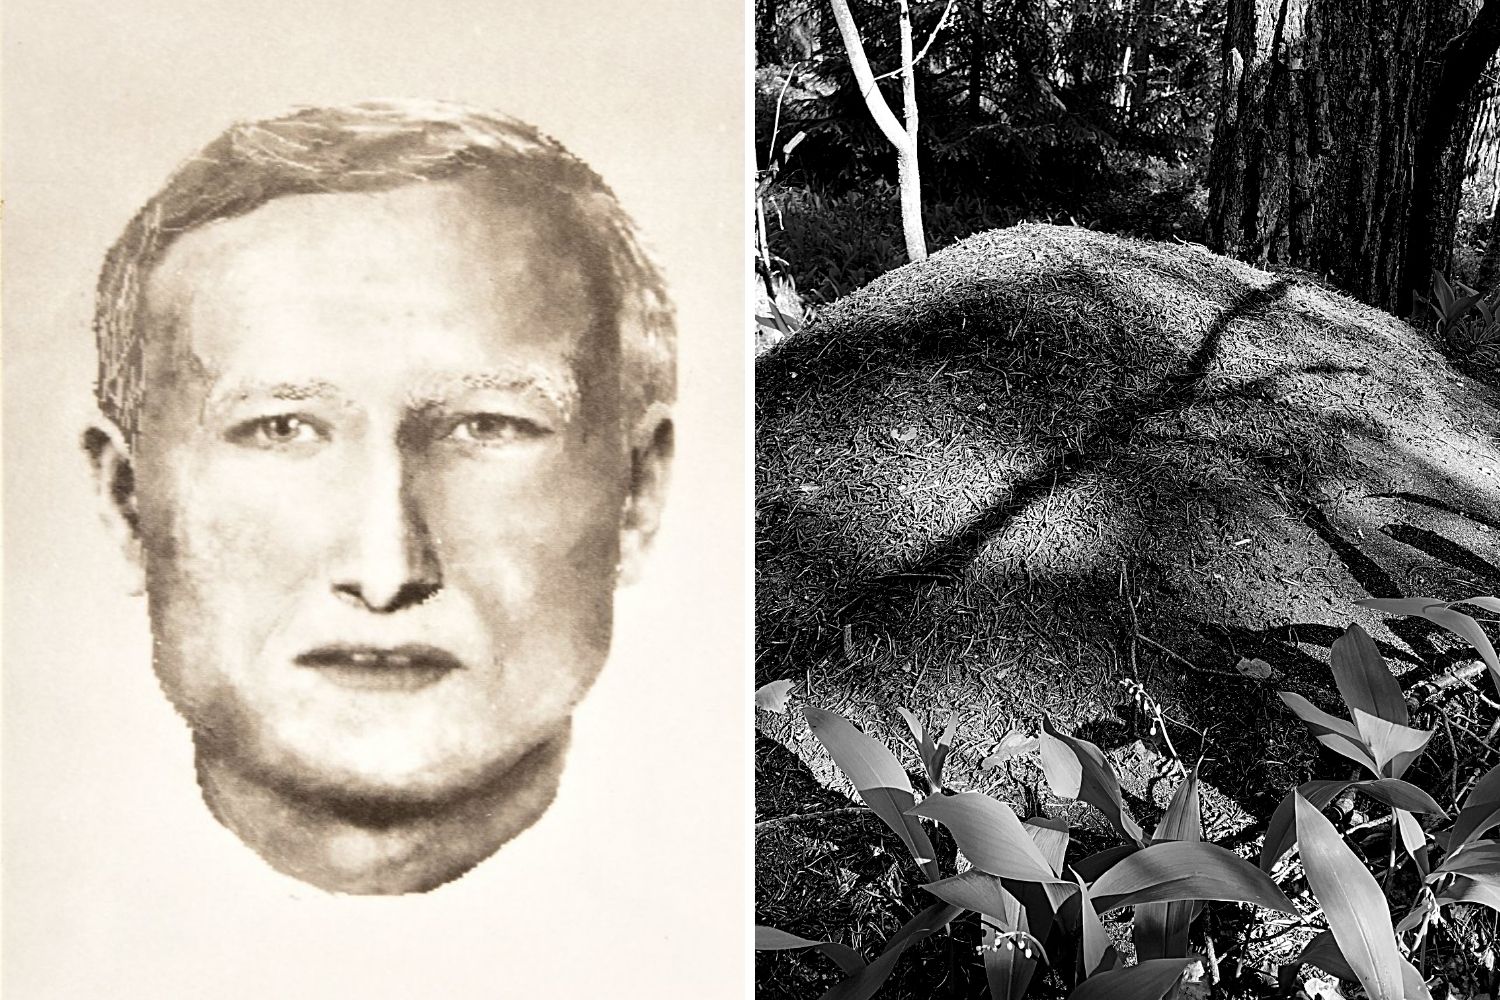 Od szokującego odkrycia pod Łodzią minęło 28 lat. Wciąż nie wiadomo, kim był zamordowany mężczyzna - Zdjęcie główne